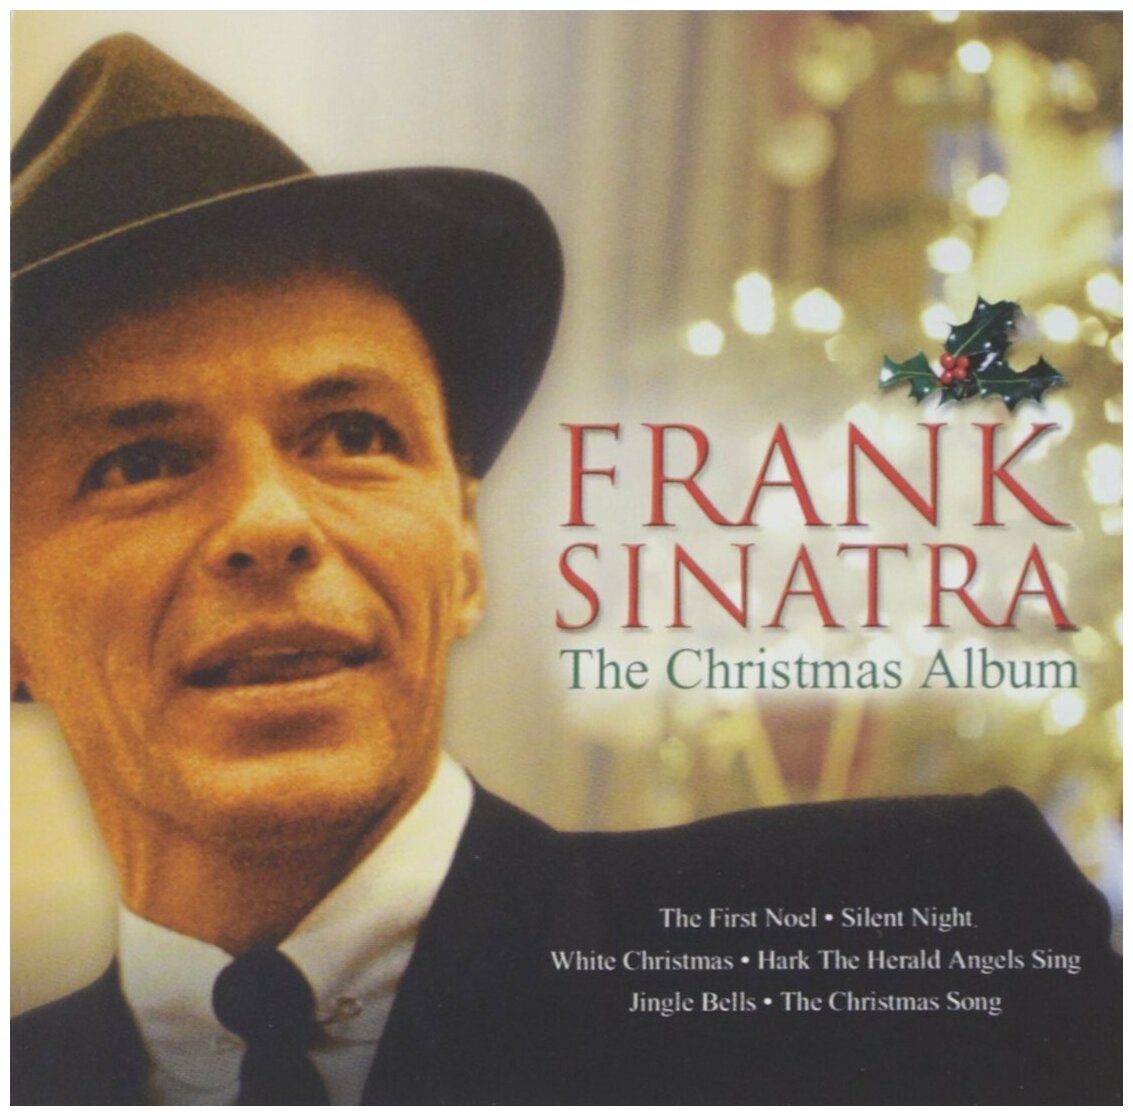 AUDIO CD Рождество - хиты от Франка Синатры! Sinatra, Frank - Christmas Album ЭТО компакт диск! Audio CD